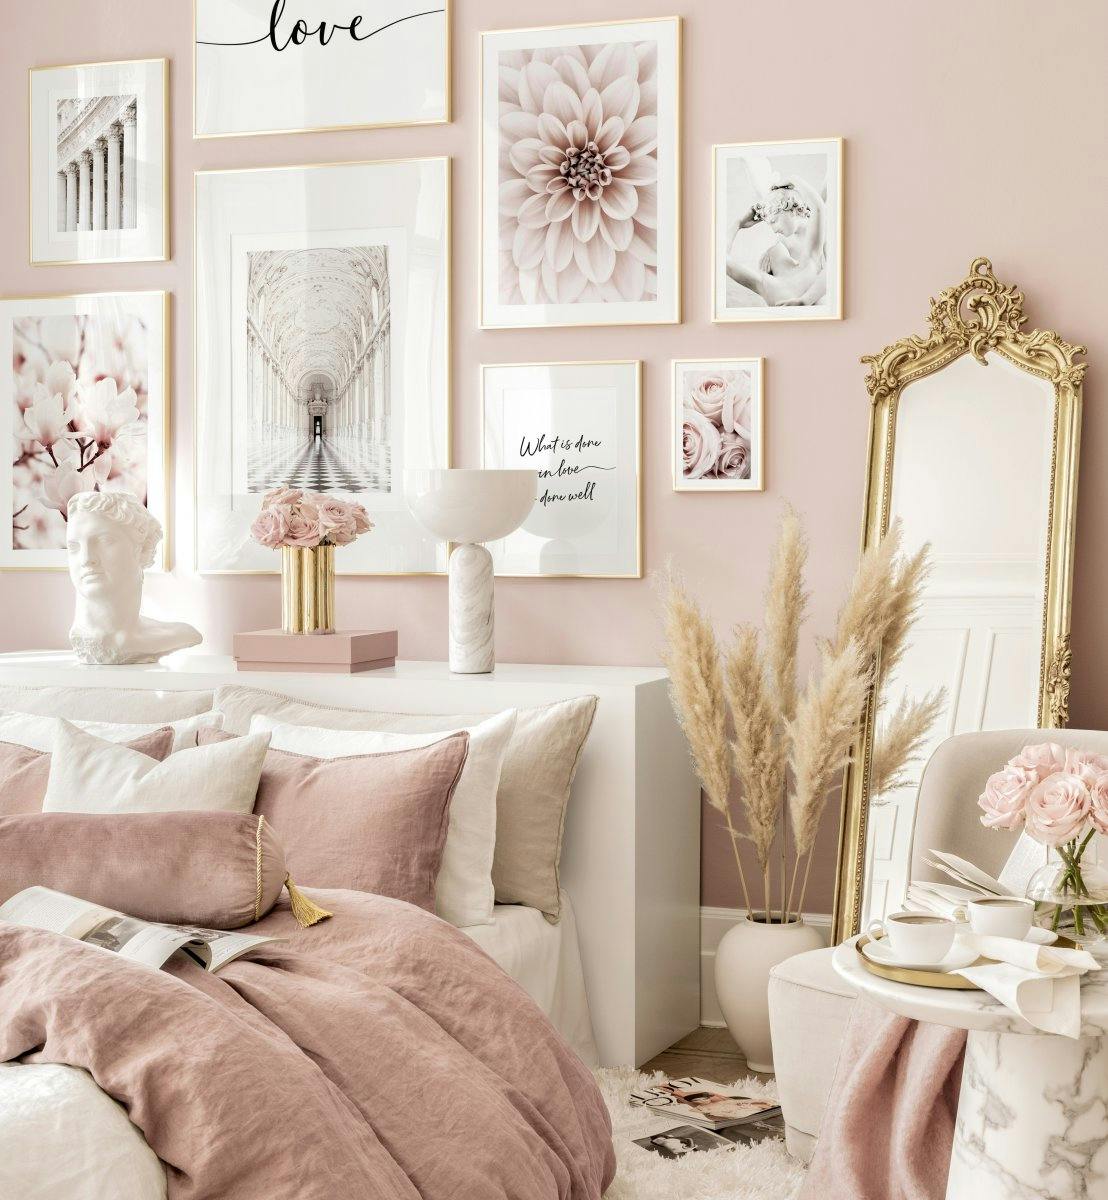 Décoration murale rose de rêve posters décoration chambre rose cadres dorés